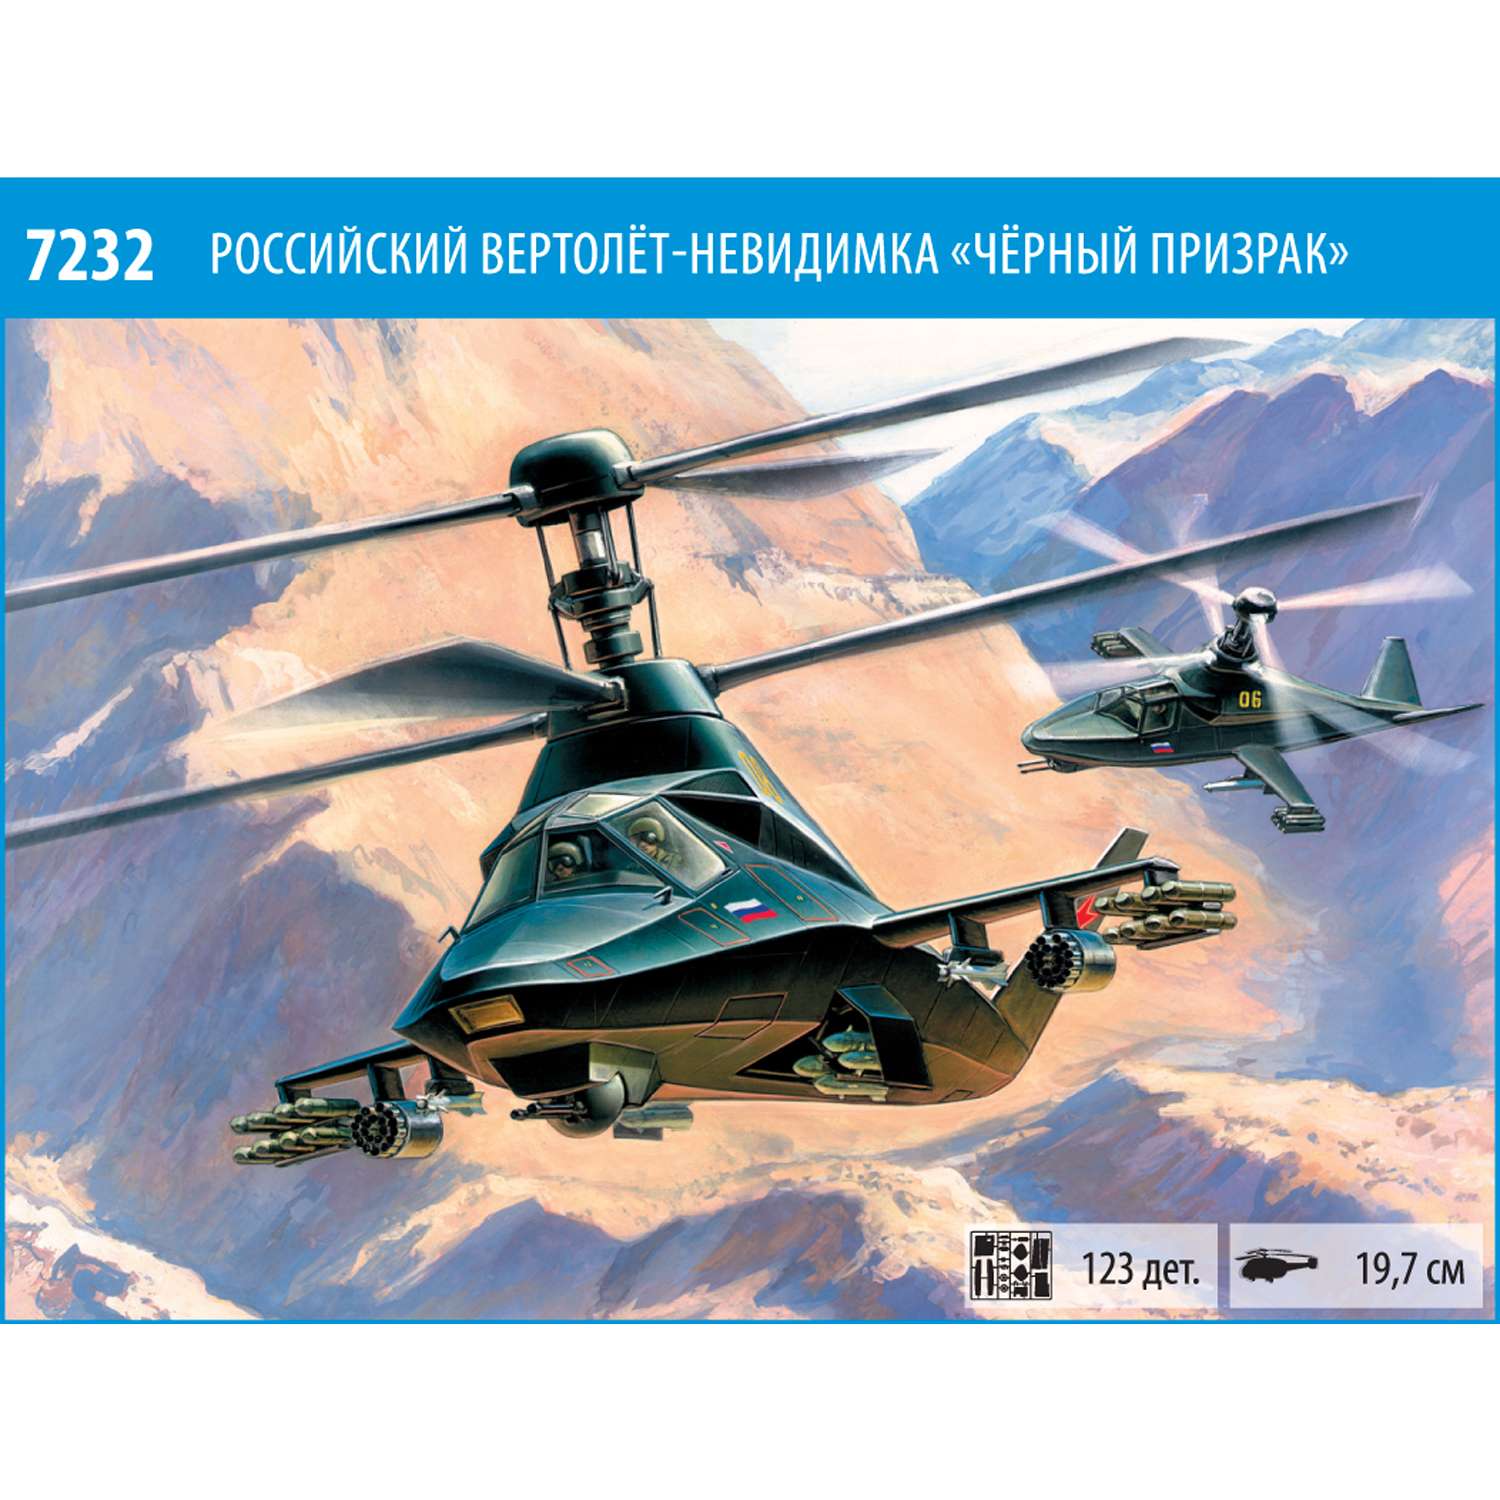 Модель для сборки Звезда Российский вертолет невидимка Ка-58 Черный призрак 7232 - фото 5